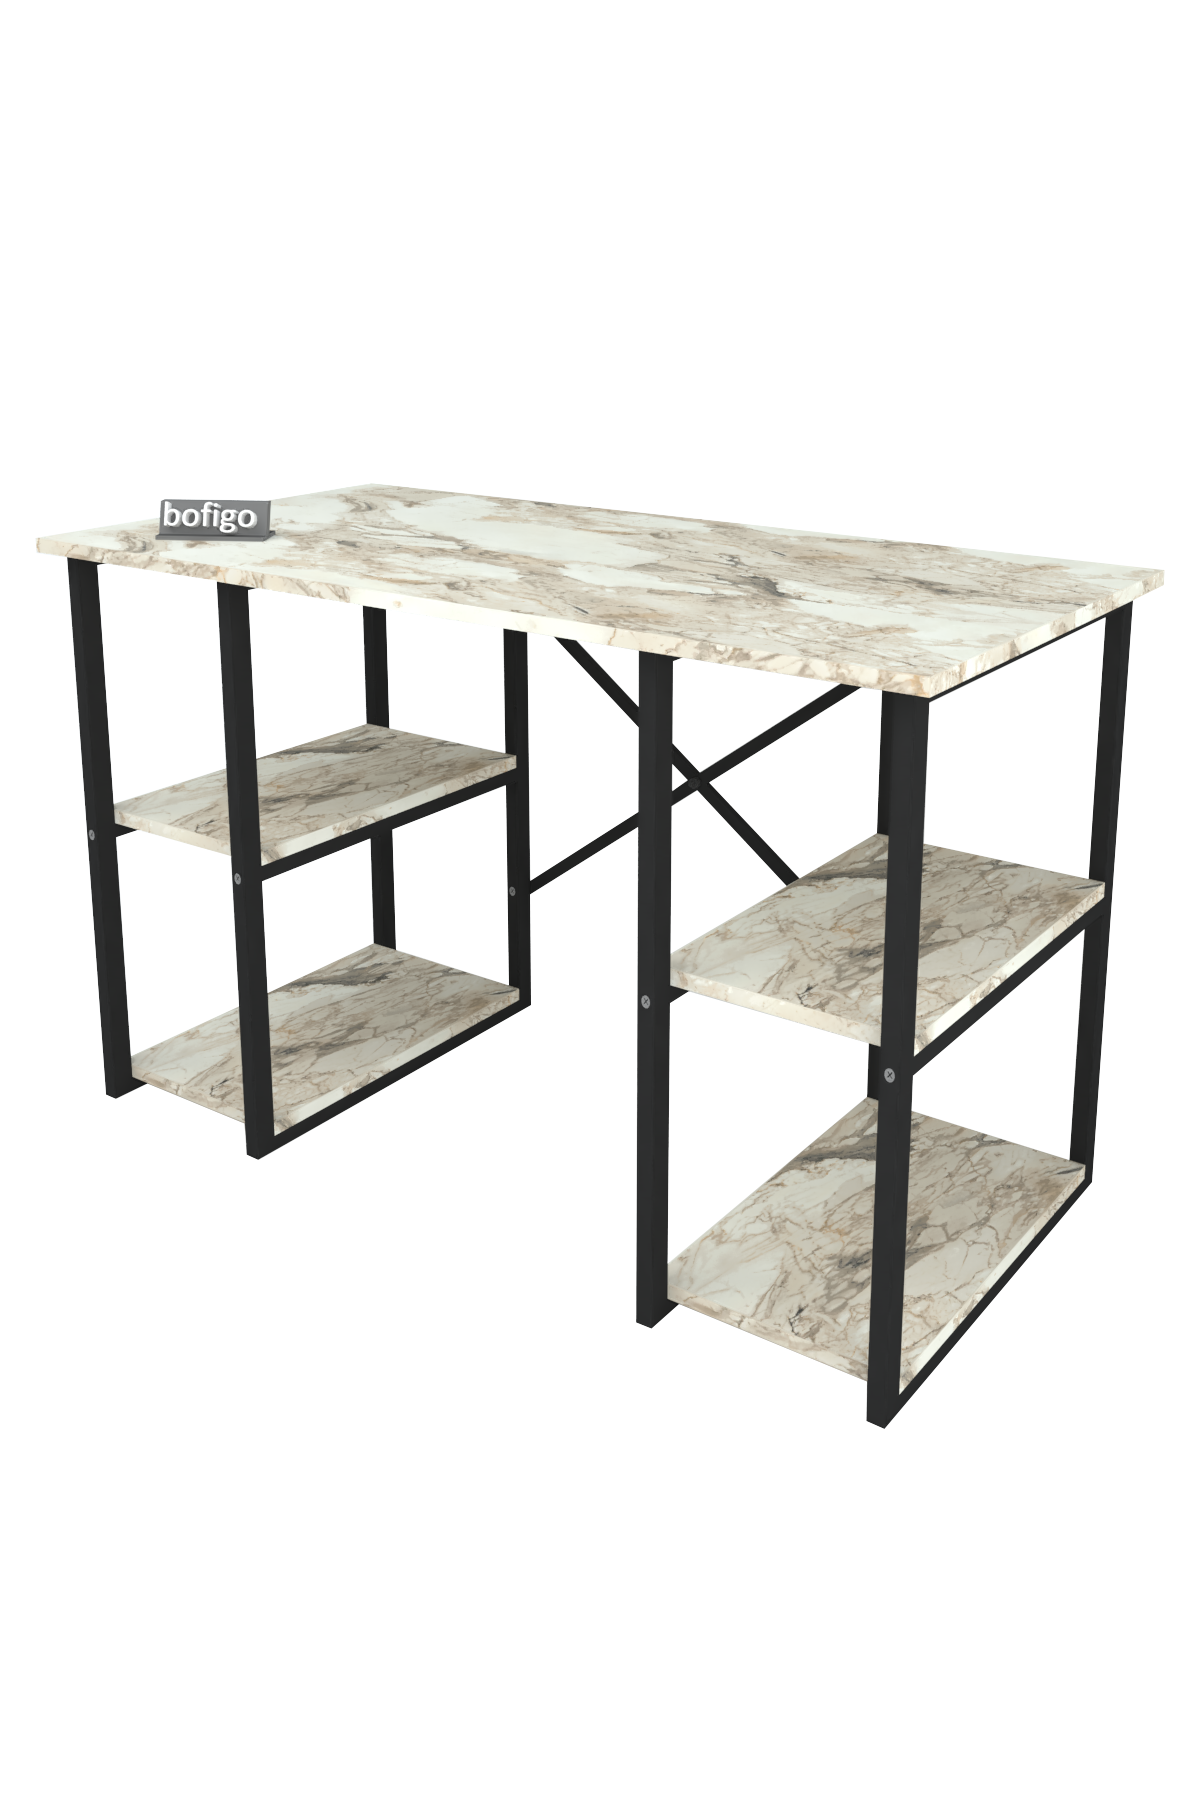 Bofigo 4 Shelf Desk 60x120 cm Efes